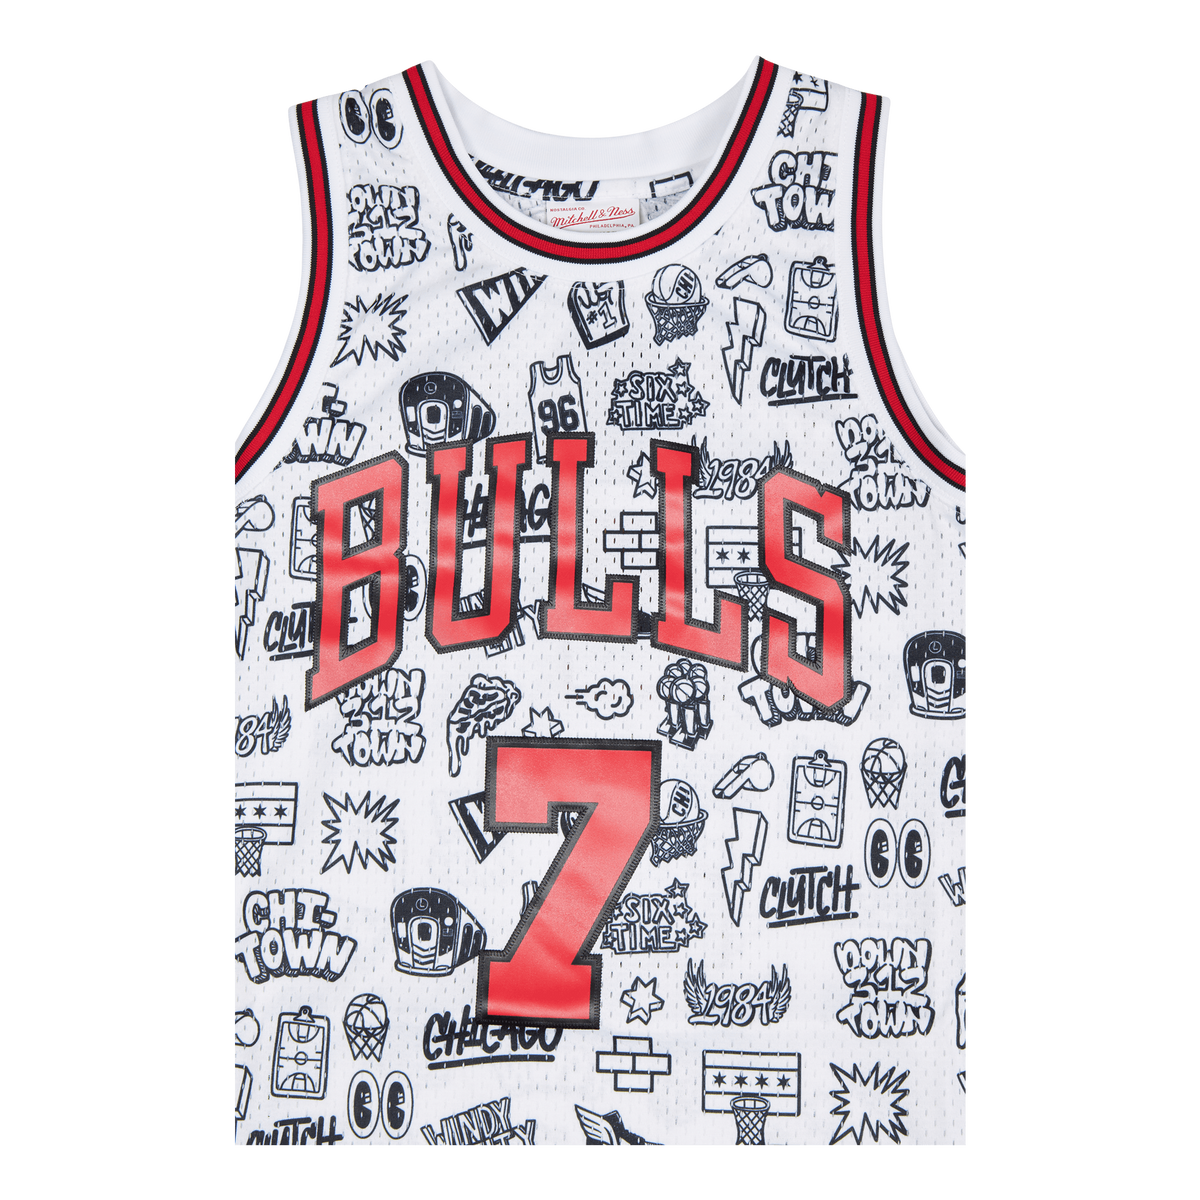 Bulls Doodle Swingman Jersey - Toni Kukoc